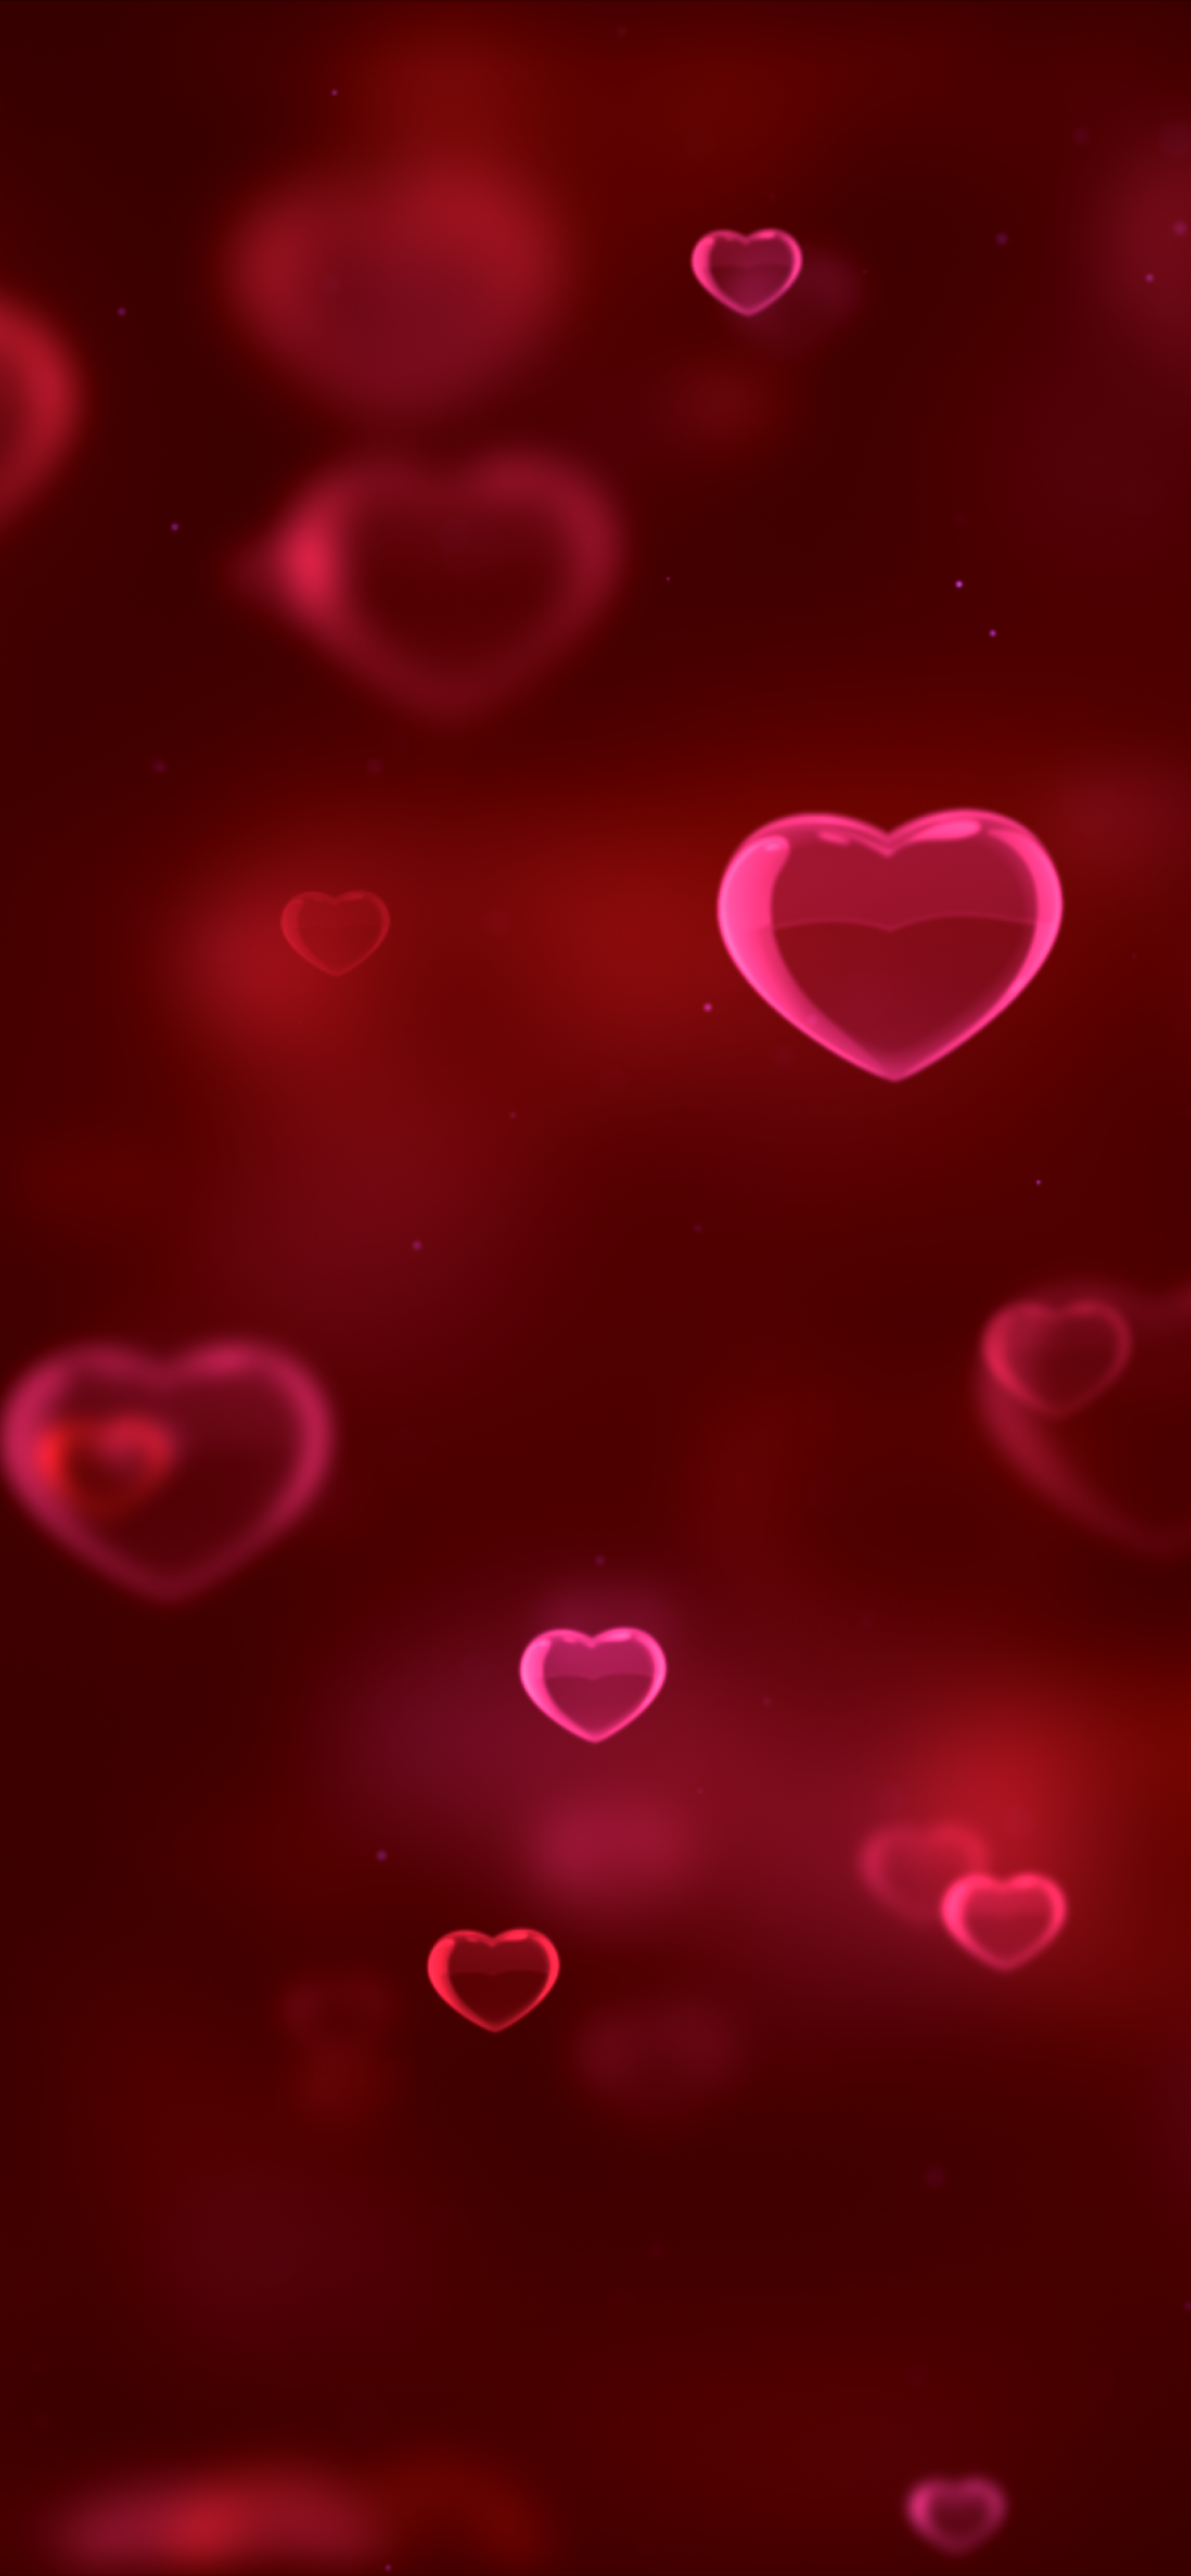 Hãy đến và khám phá hình nền hoàn toàn mới với họa tiết trái tim đỏ đầy tình yêu. Bạn sẽ nhận được cảm giác ấm áp và yêu thương khi sử dụng hình nền này trên thiết bị của mình.